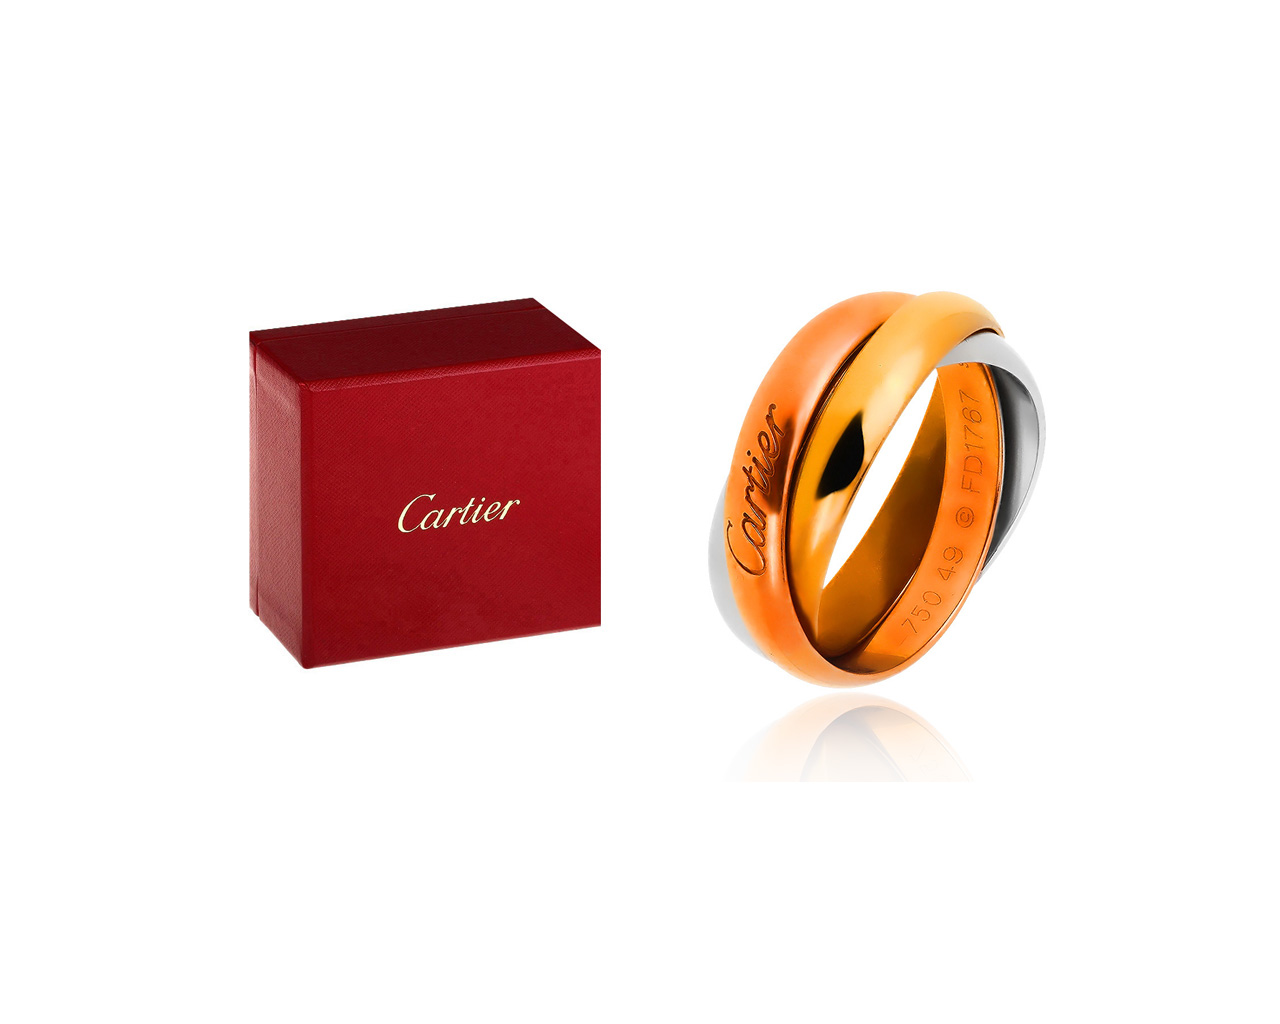 Трехцветное золотое кольцо Trinity De Cartier